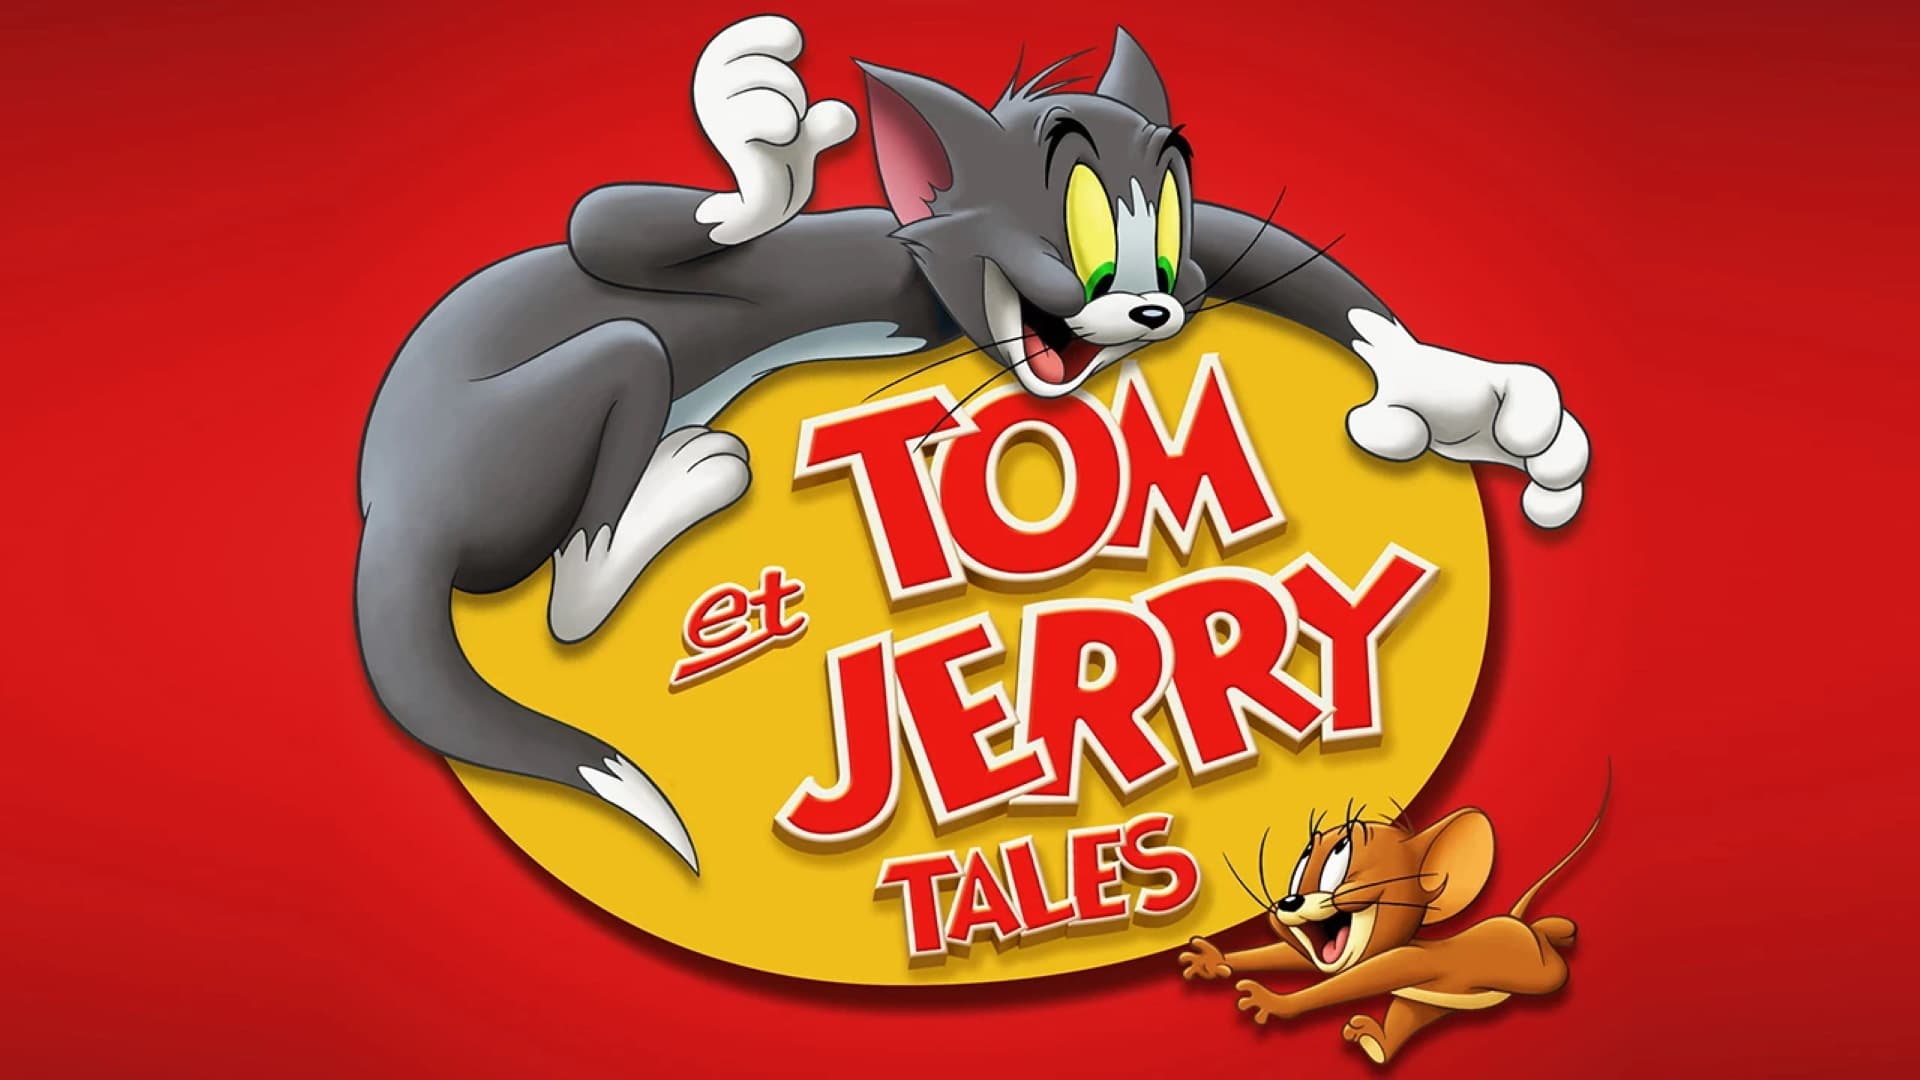 Tom i drink. Том и Джерри 2006. Том и Джерри сказки. Том и Джерри Джерри. Том и Джерри сказки 2006.